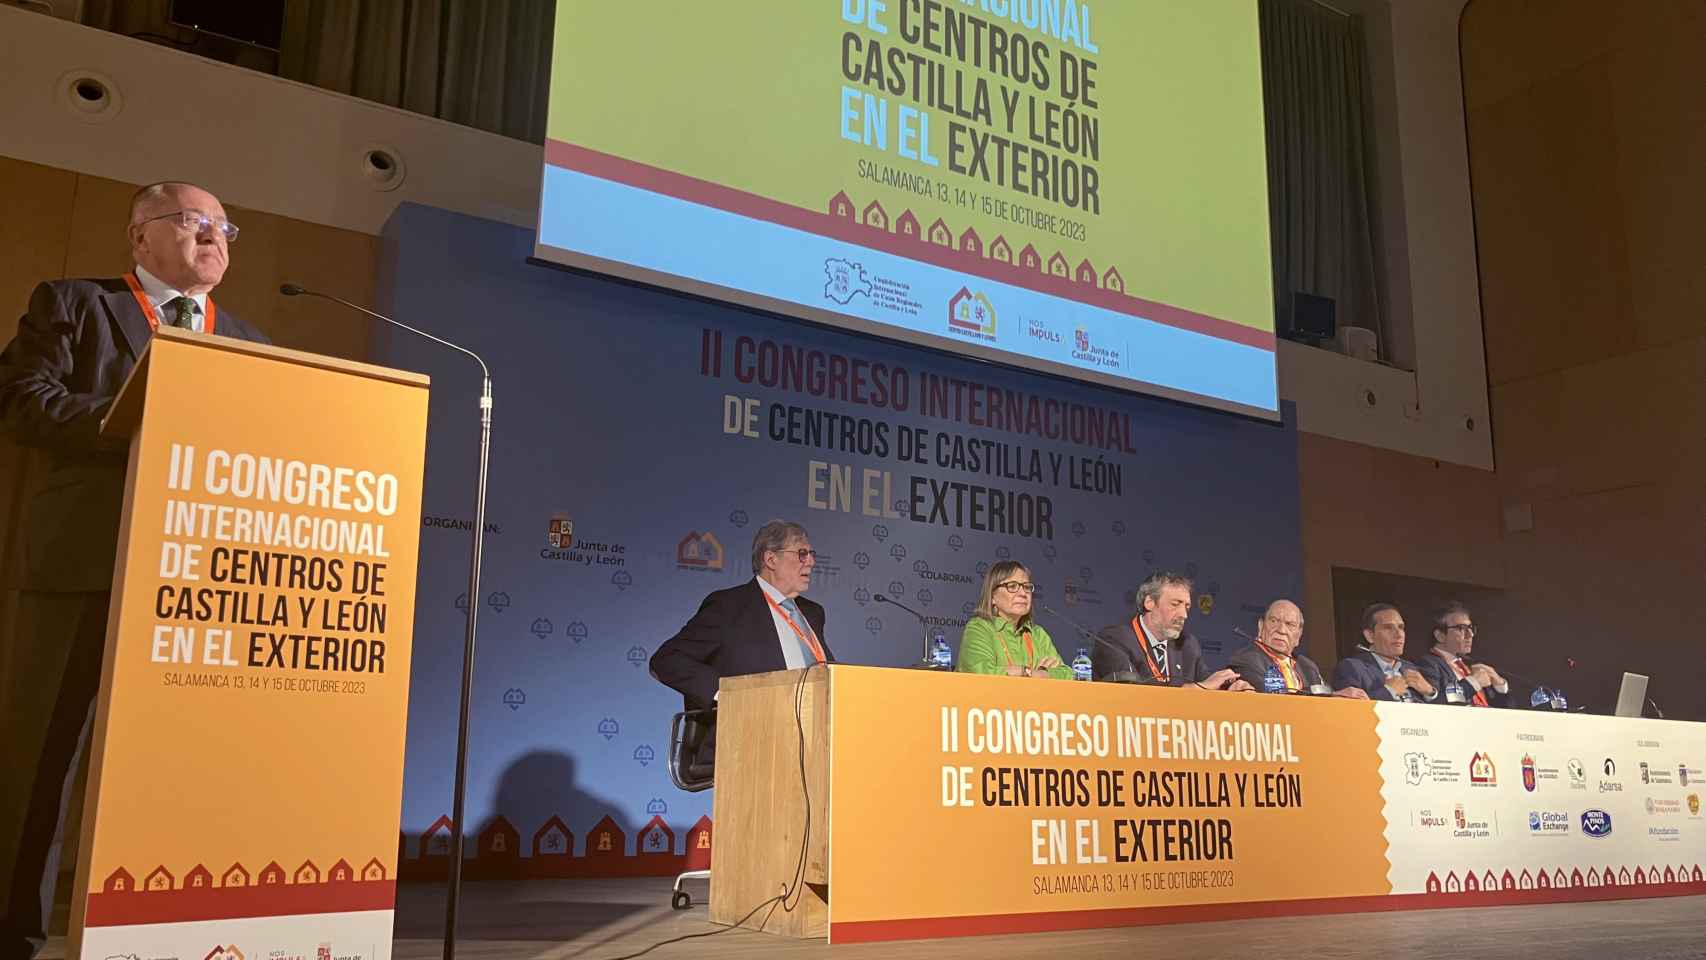 Imagen del II Congreso Internacional de Centros de Castilla y León en el Exterior.